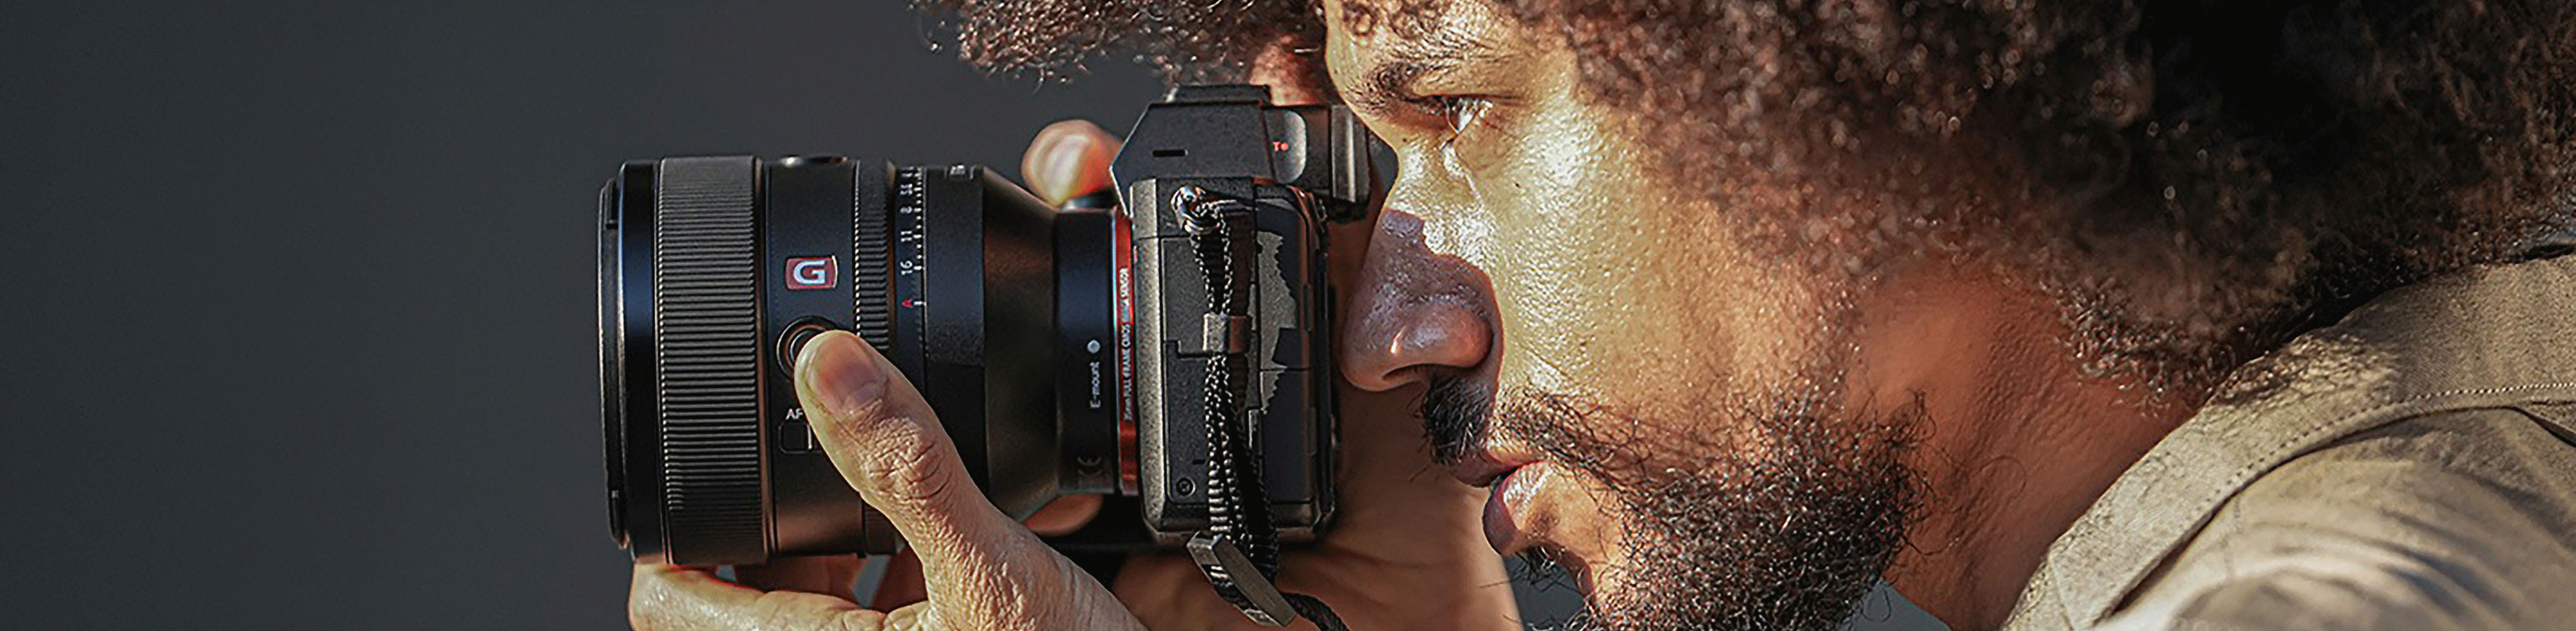 Snímek osoby držící fotoaparát s objektivem FE 50mm F1.2 GM